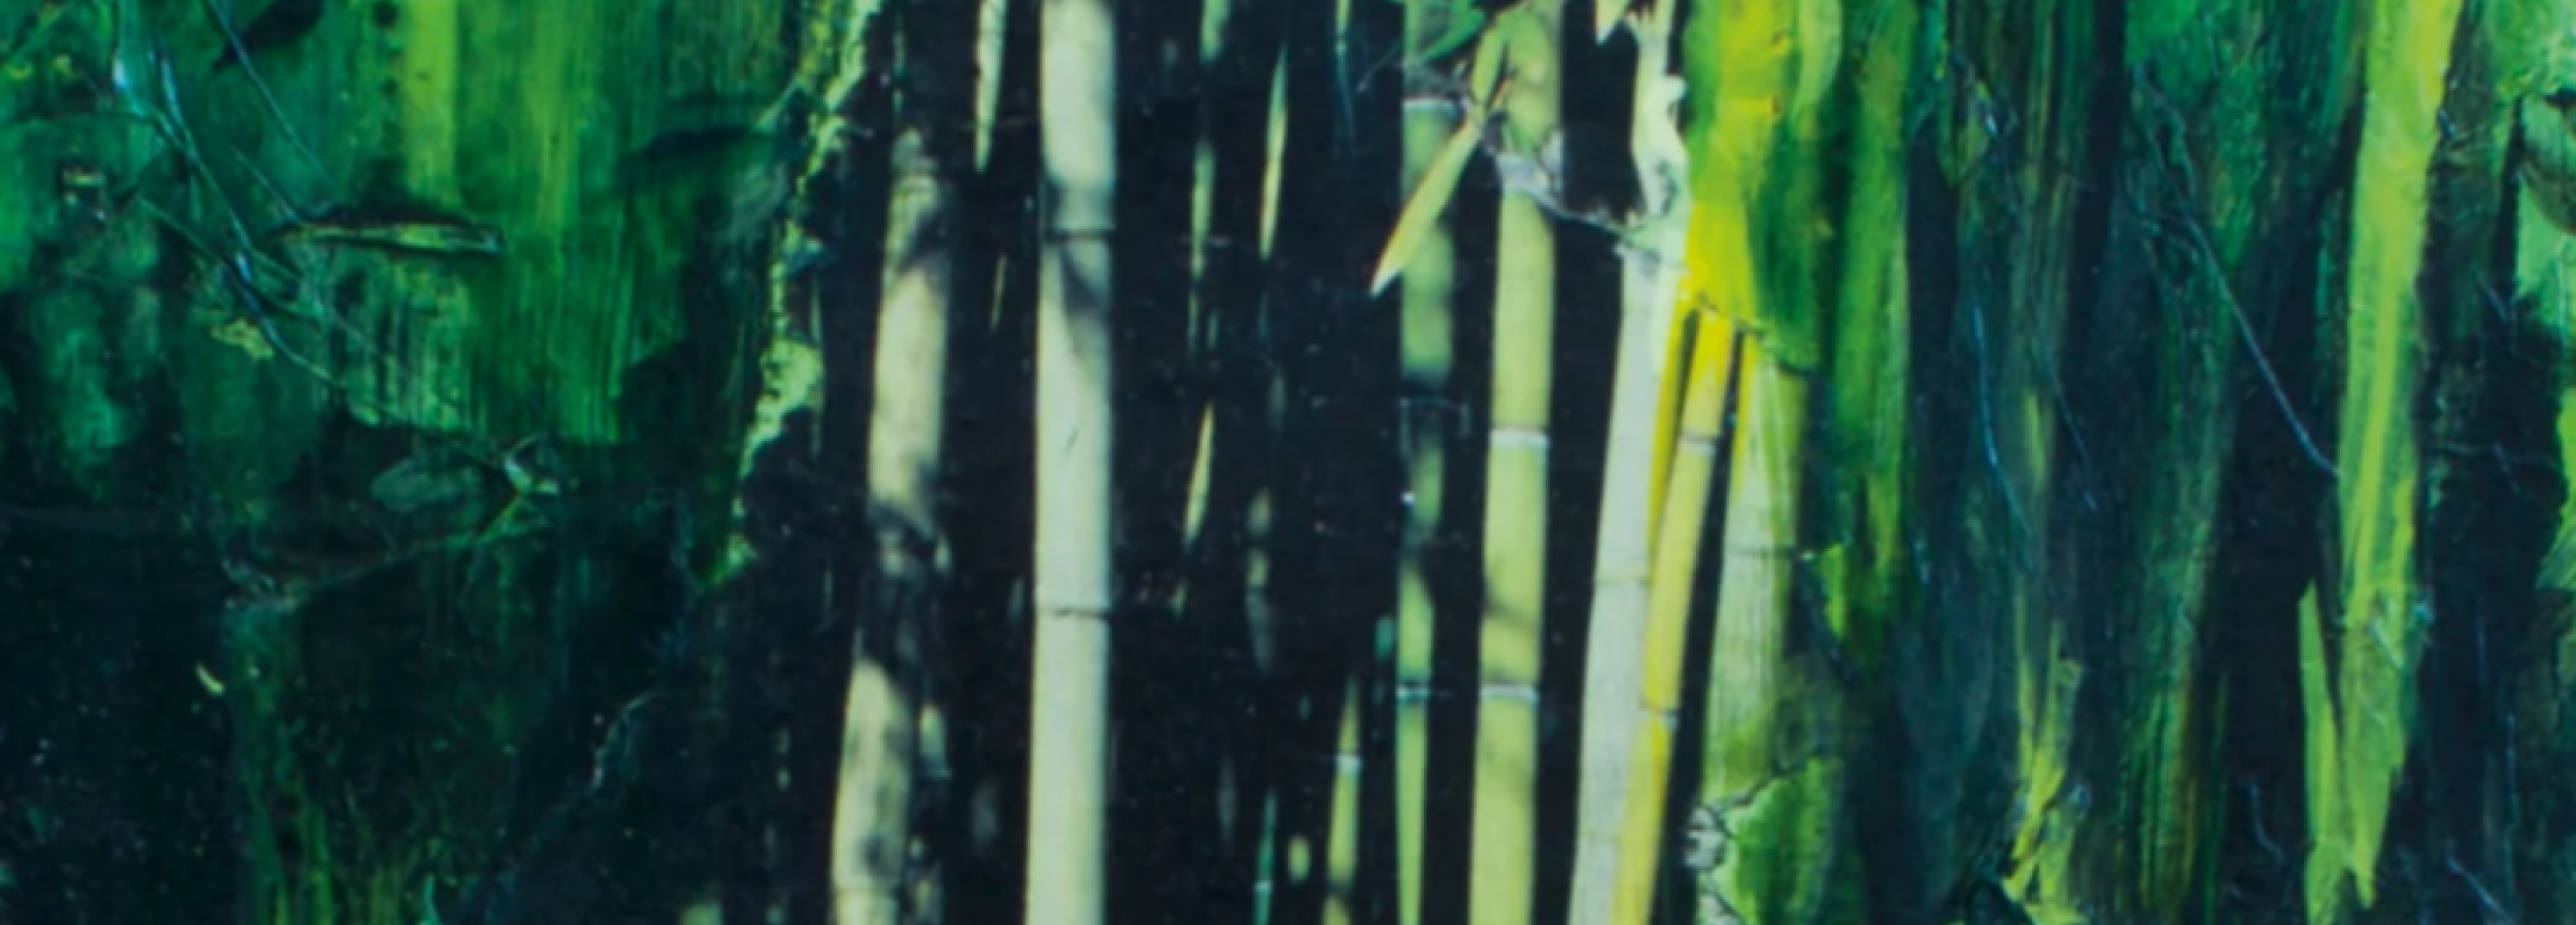 Bamboe buigt, maar breekt niet, Indisch Herinneringscentrum, Museum Sophiahof, Den Haag